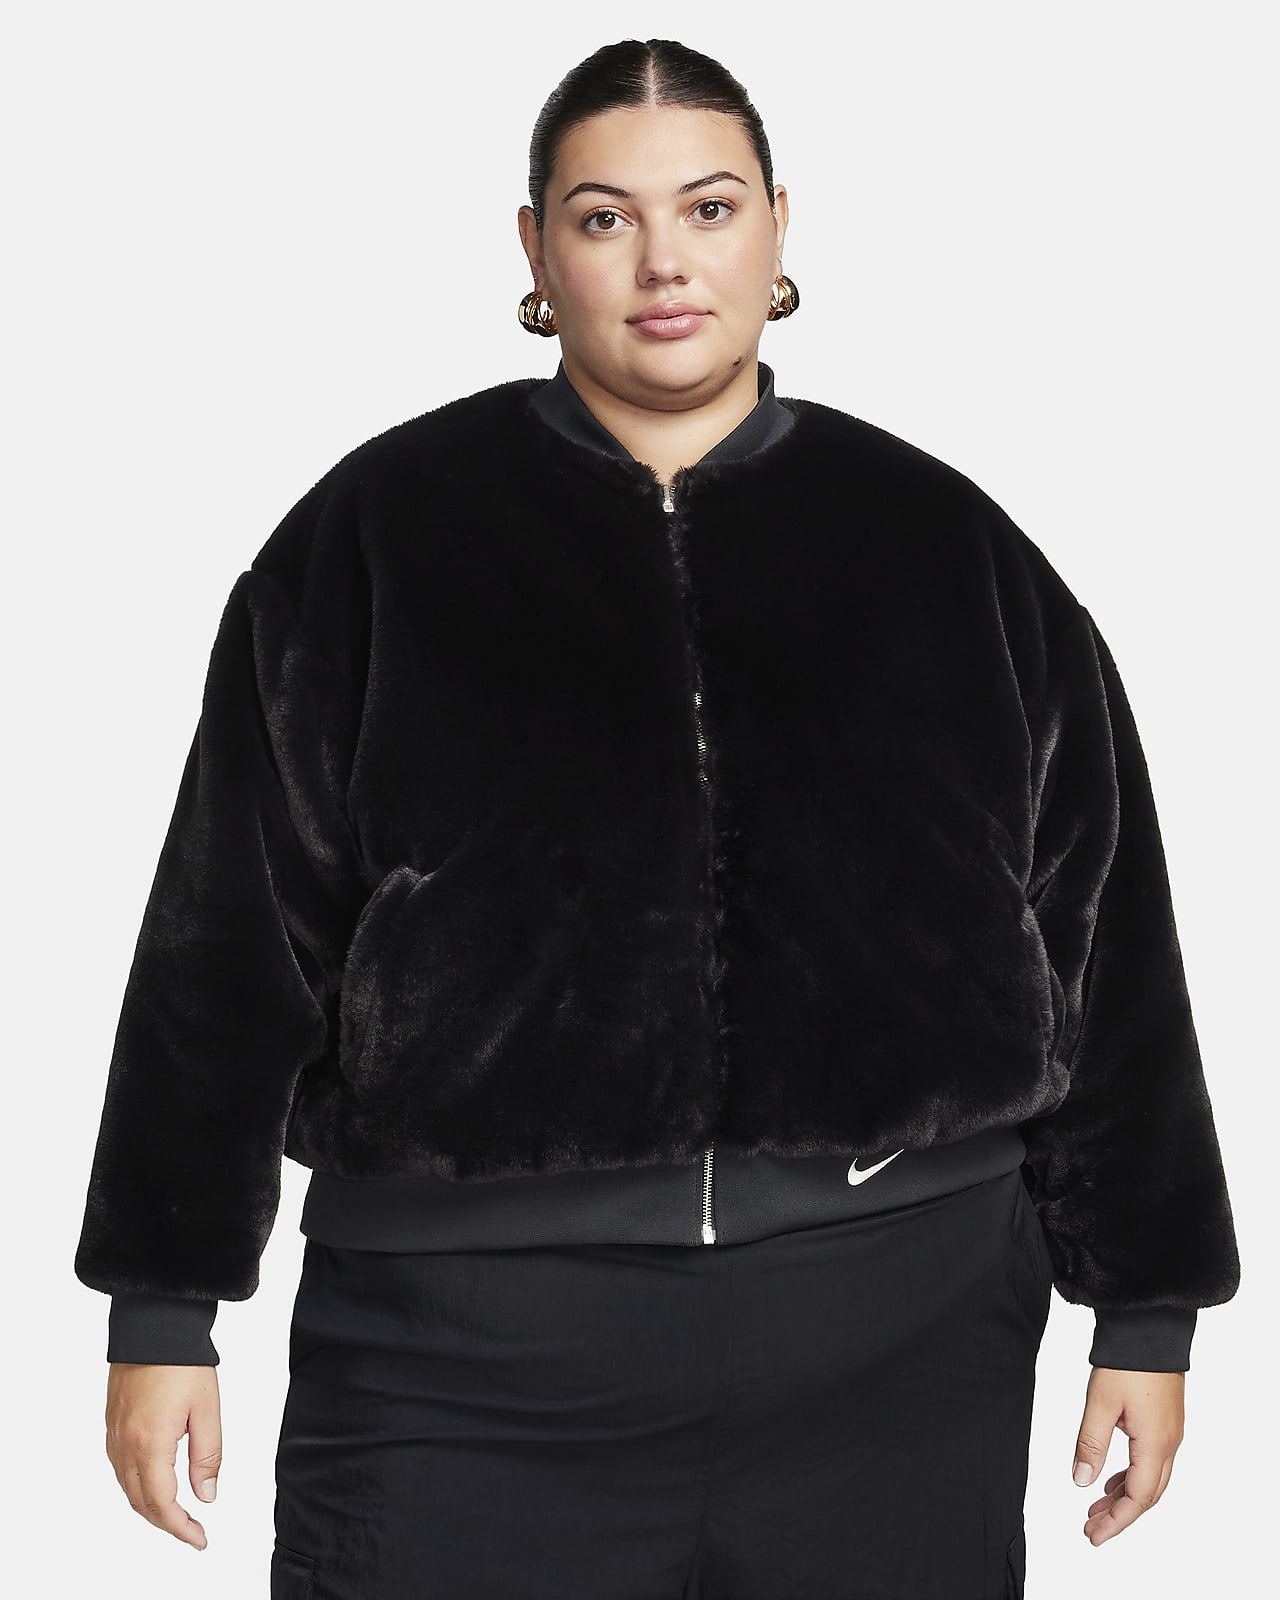 Γυναικείο τζάκετ bomber διπλής όψης από απομίμηση γούνας Nike Sportswear (μεγάλα μεγέθη)